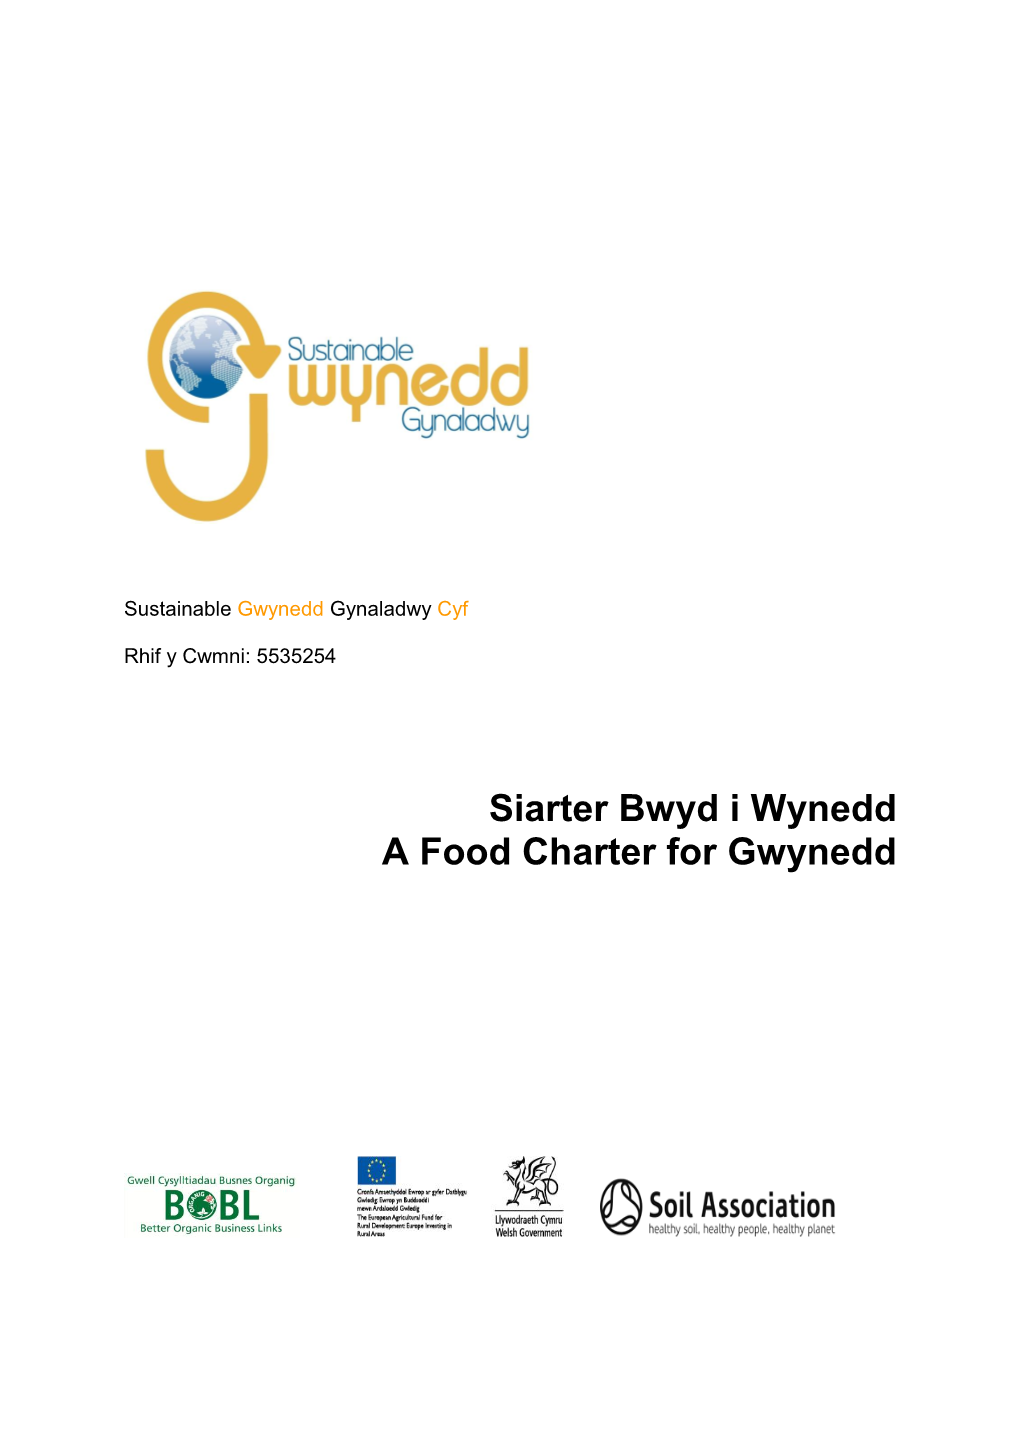 Gwynedd Food Charter